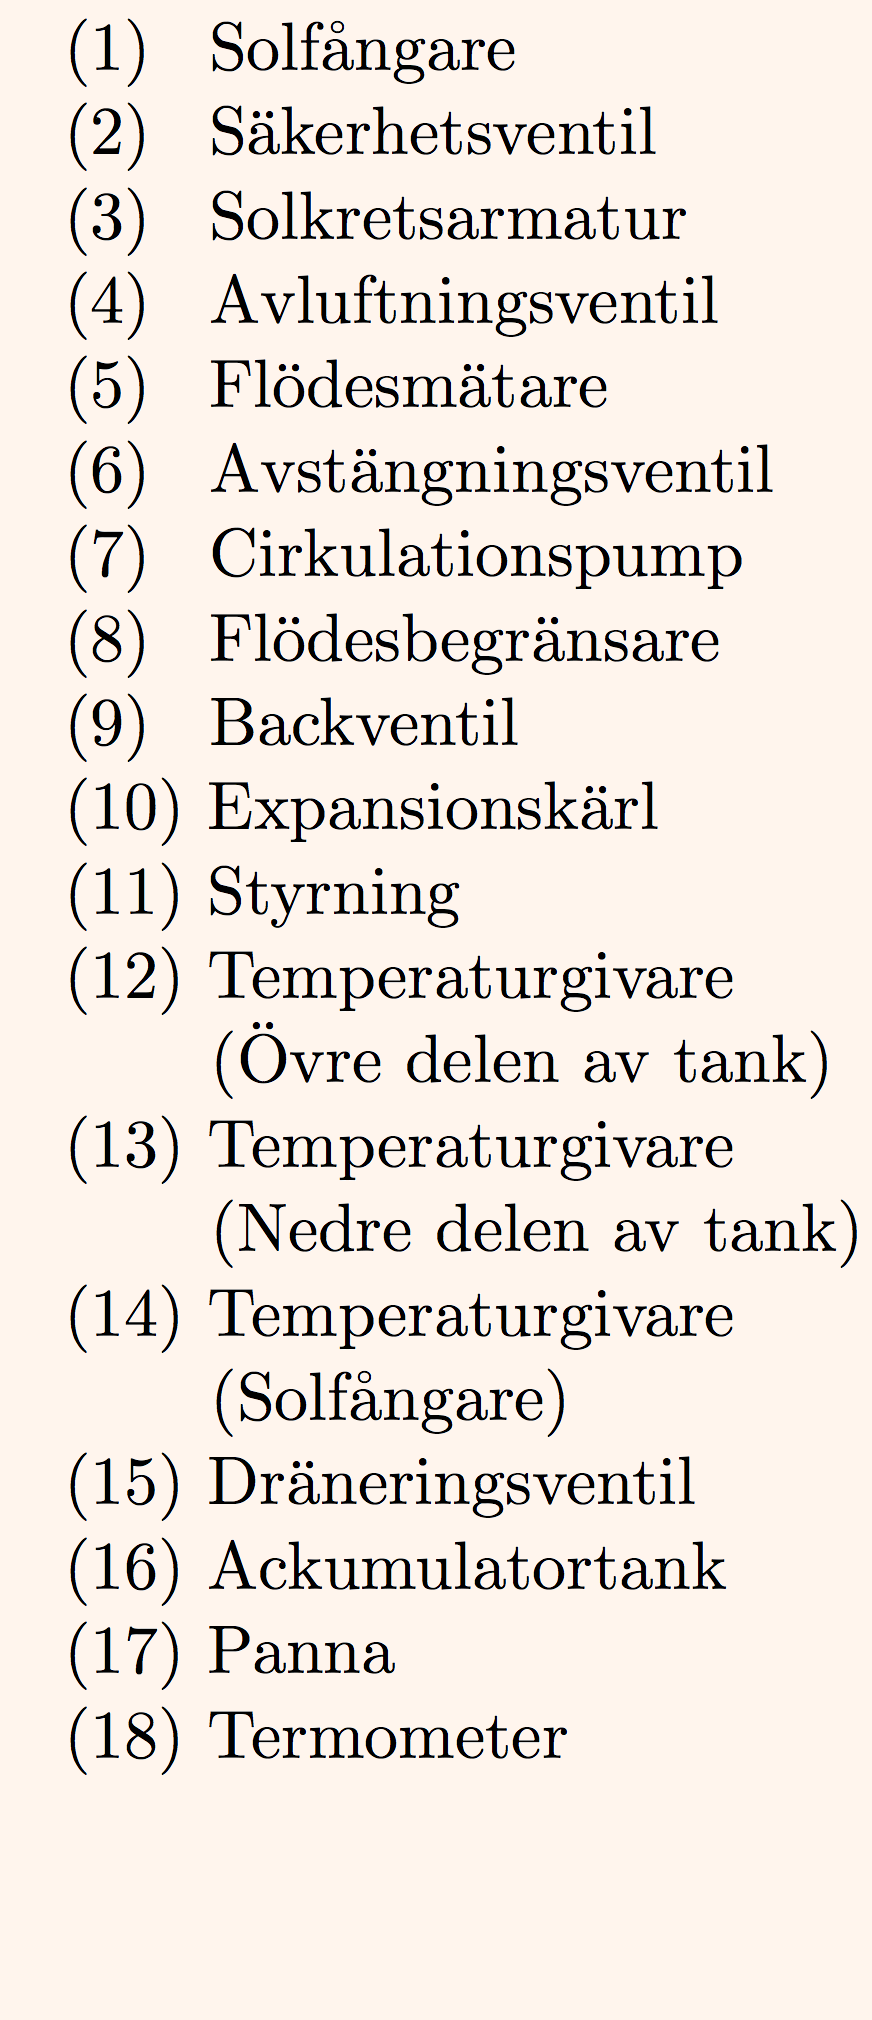 8 4 Solfångare i värmesystemet I figur 3 finns ett exempel på hur solfångarna kan kopplas till ett solvärmesystem (tappvarmvattensystem).